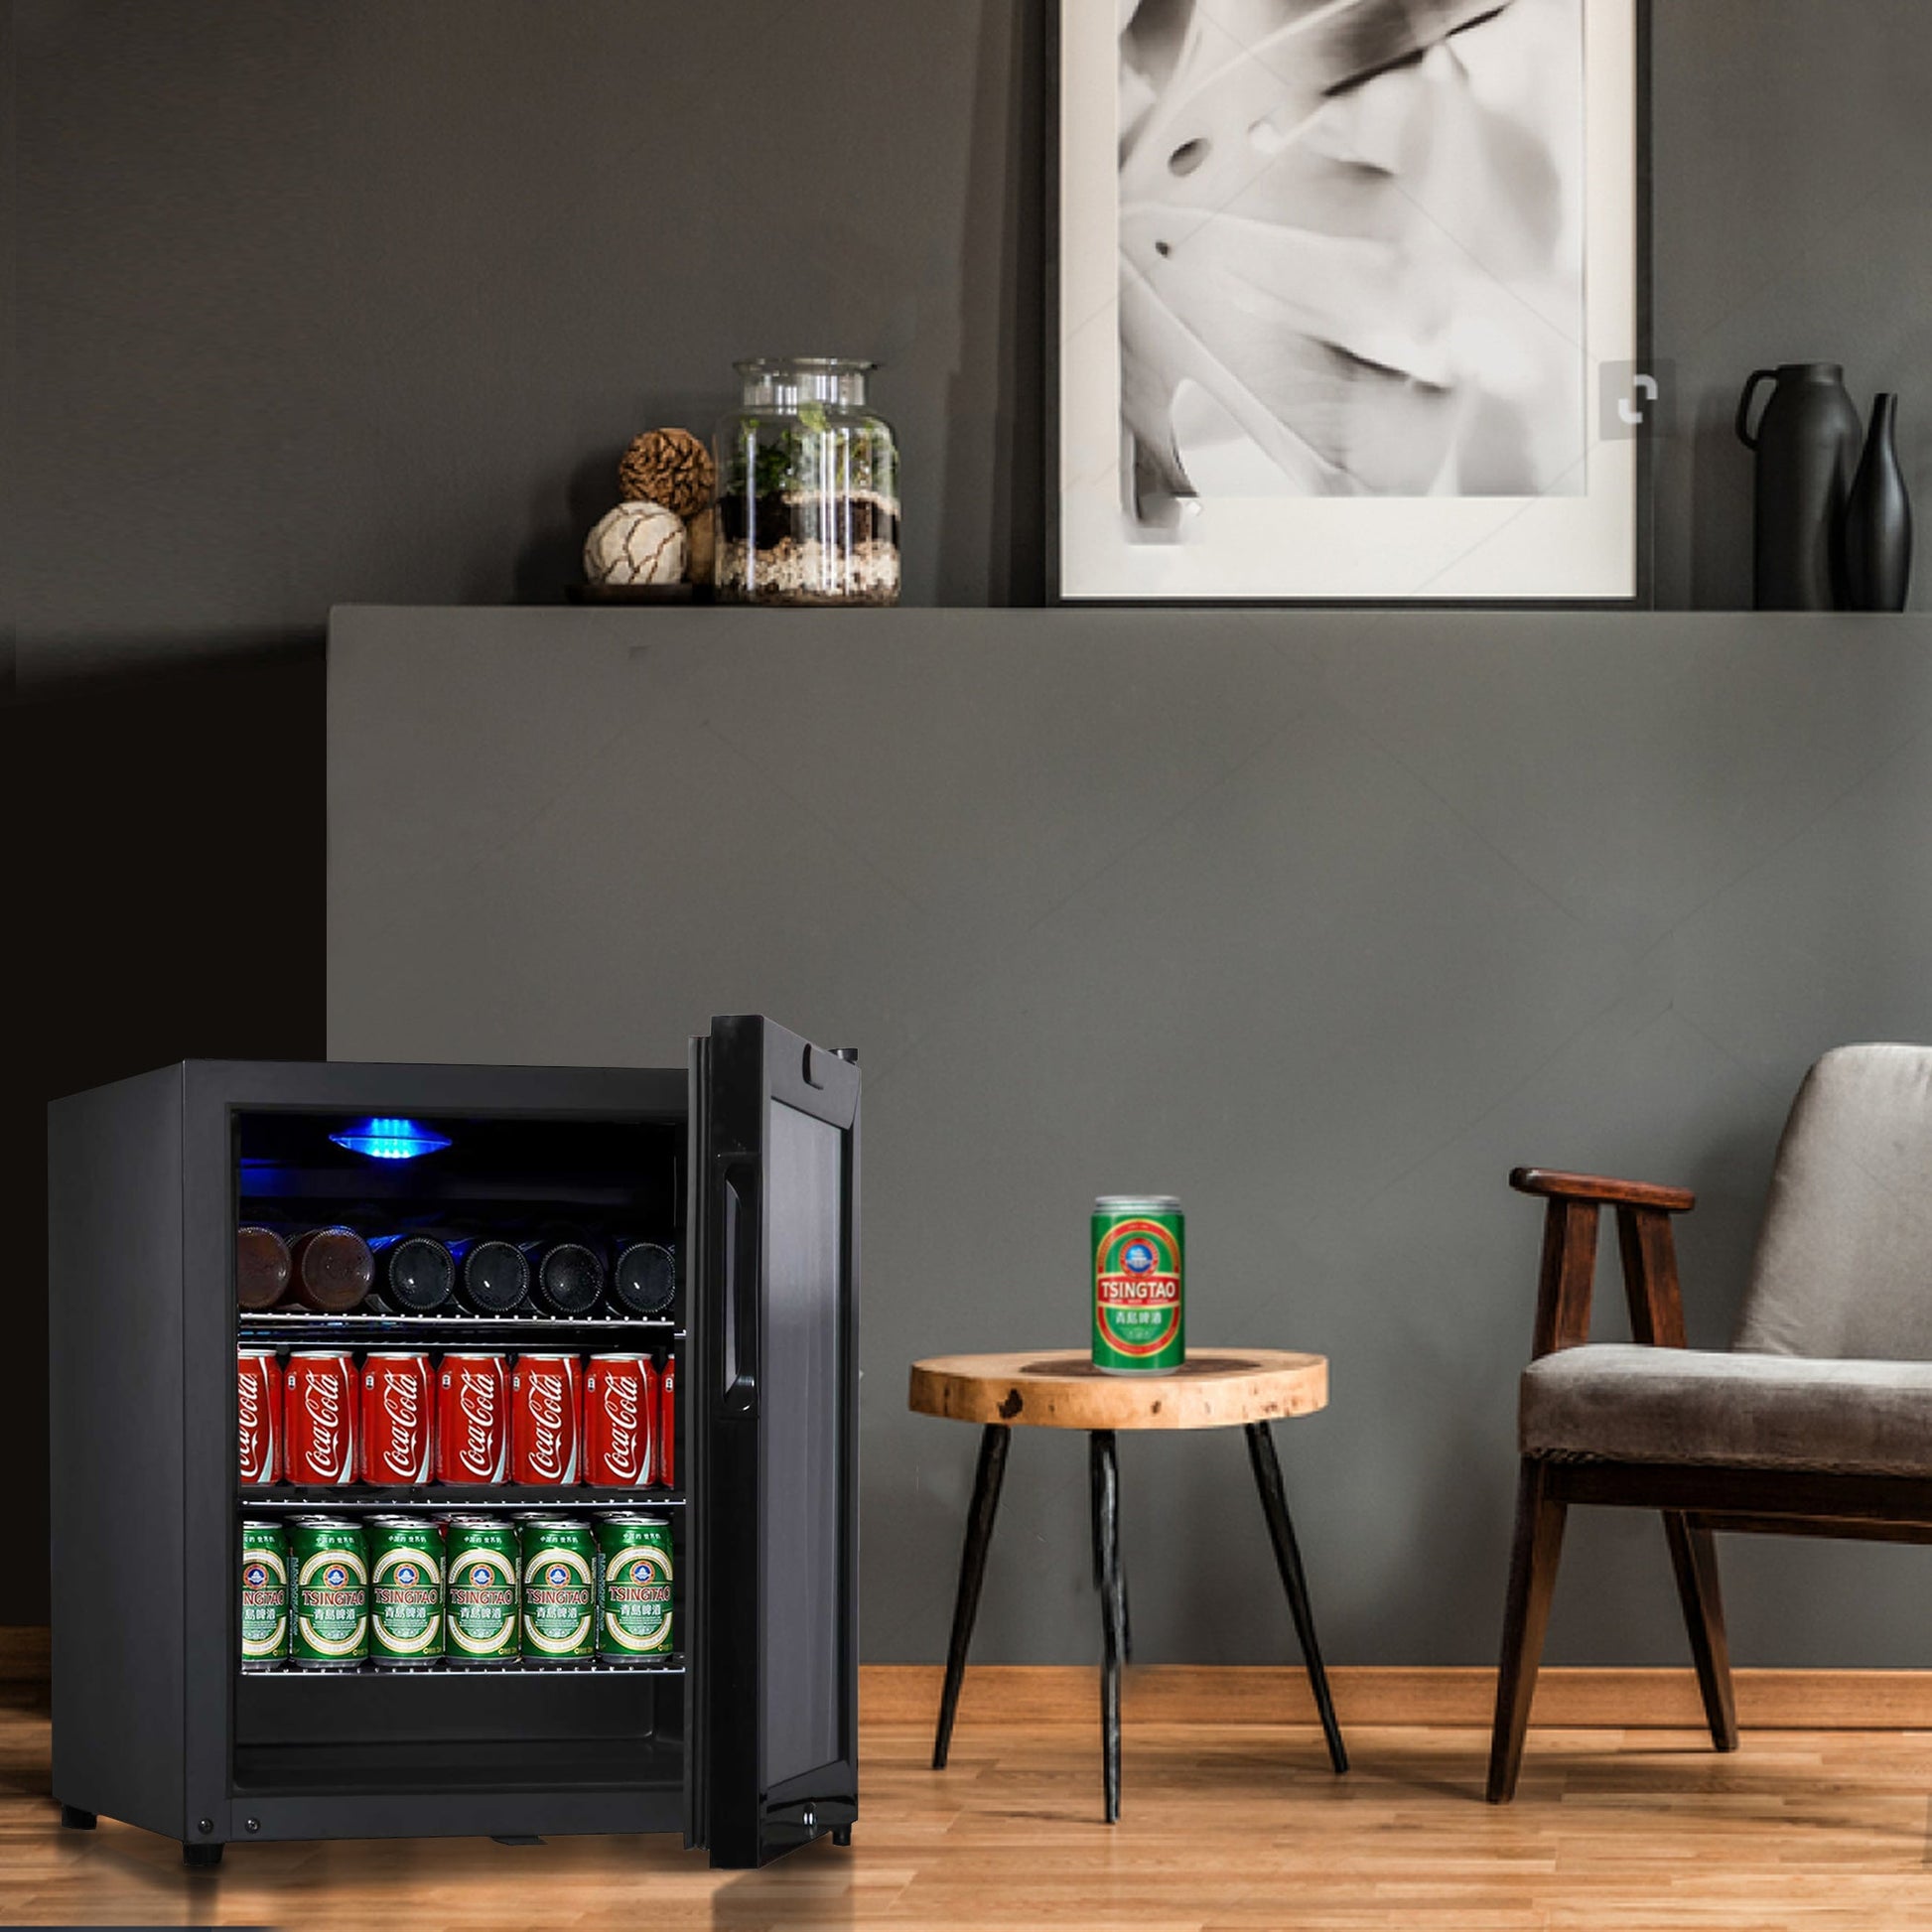 KingsBottle Display Beverage Cooler Commercial Refrigerator G80